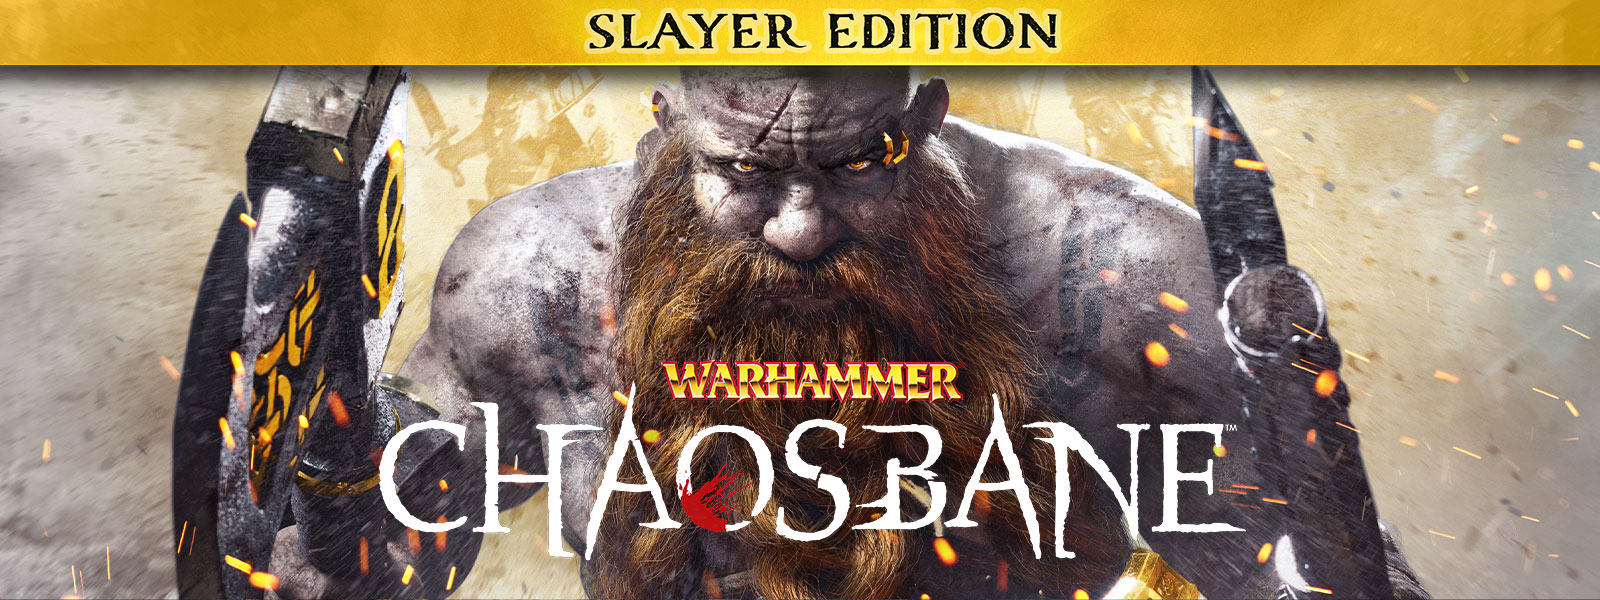 Warhammer: Chaosbane, Slayer Edition. Ein bärtiger Mann schreitet durch Flammenfunken, mit einer Axt in jeder Hand.